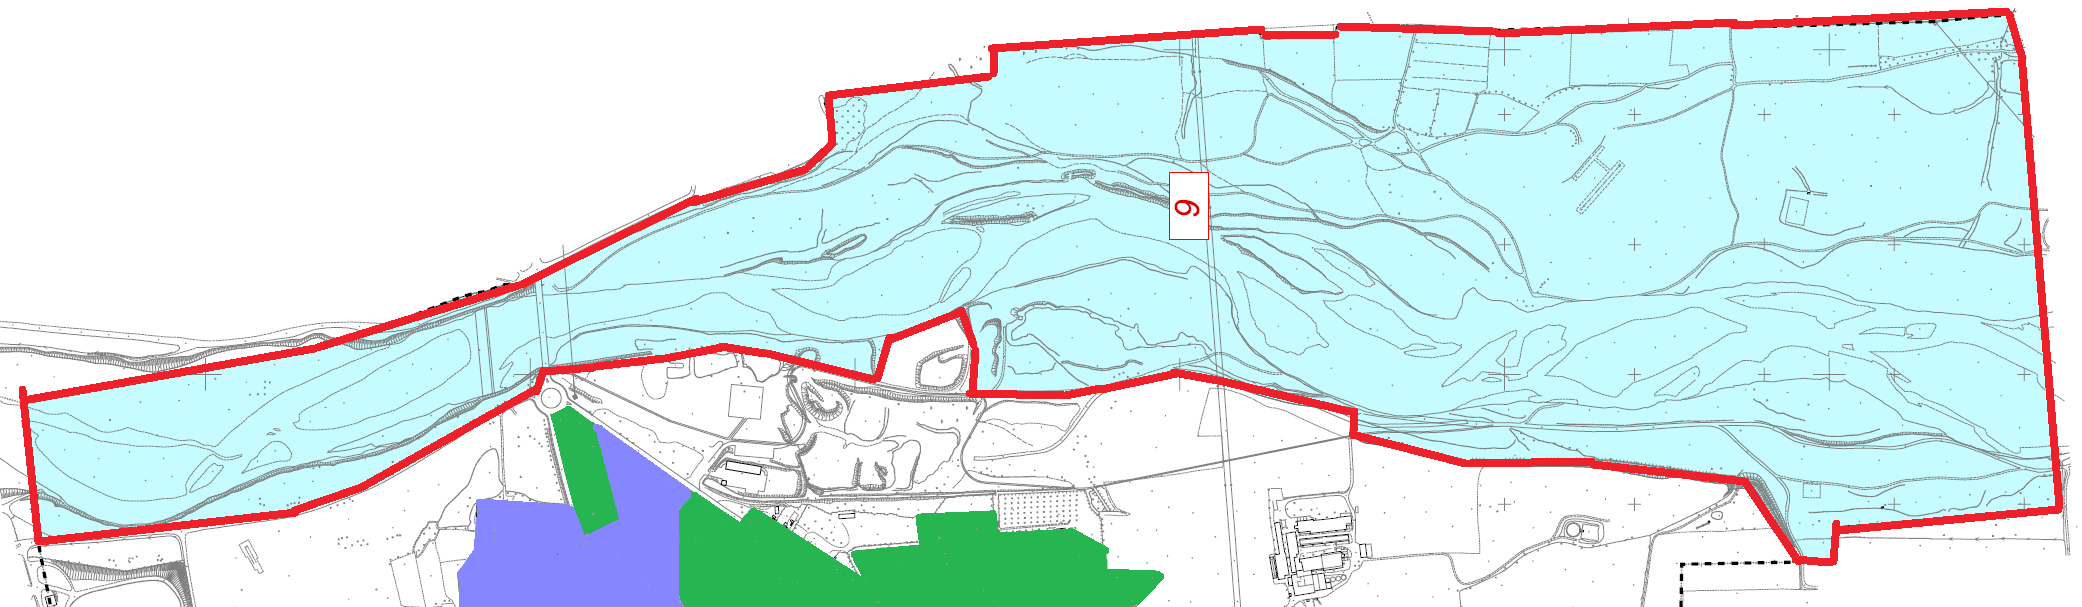 Area 6 Aree per attività di salvaguardia fluviale L Area 6 fa parte del Parco del Serio pertanto l unica attività assentibile è quella del campeggio didattico previo